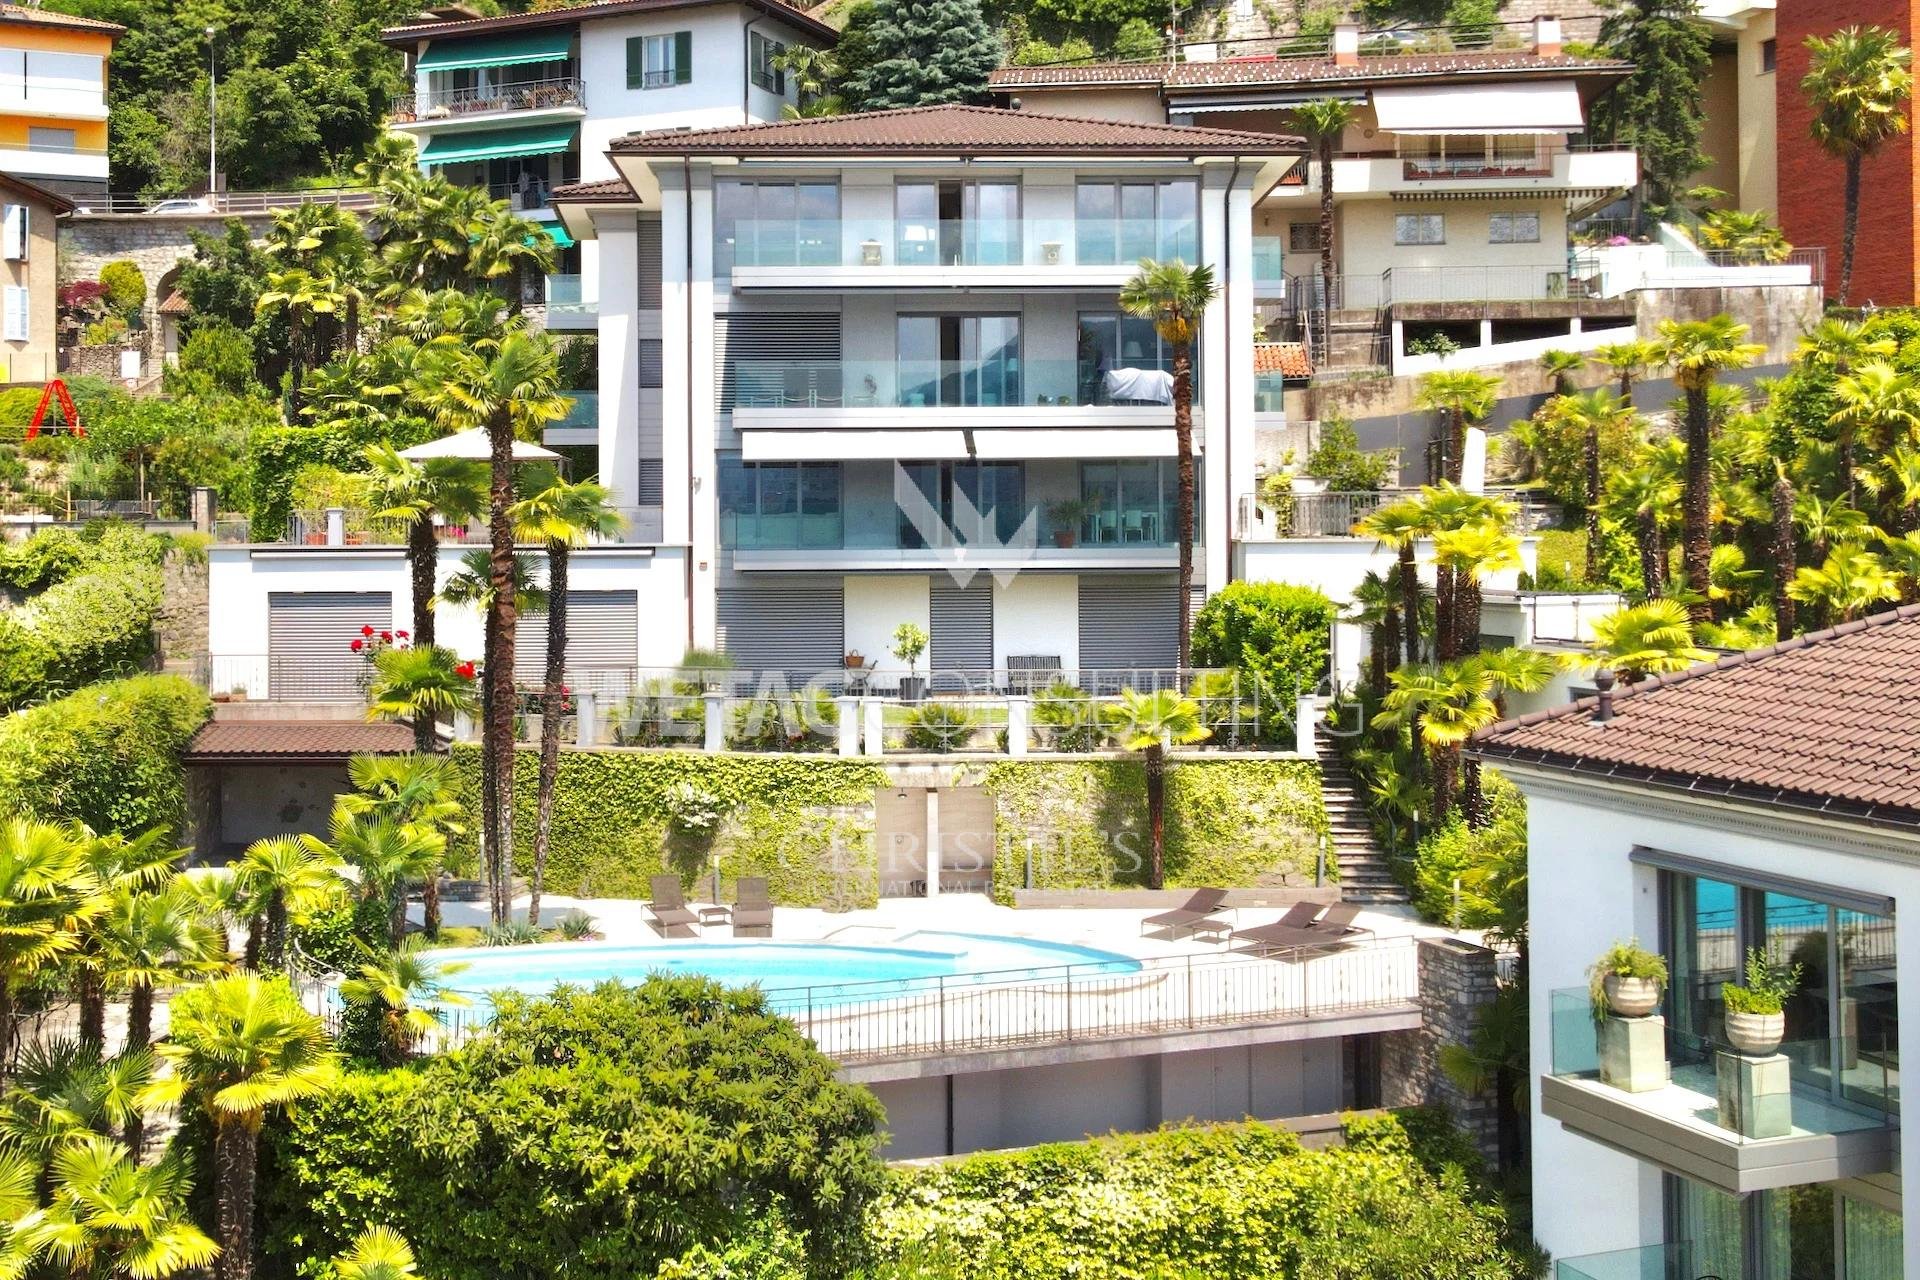 Portal Inmobiliario de Lujo en Castagnola, presenta ático de lujo venta en Lugano, piso exclusivo para comprar y apartamento lujoso en venta en Tesino.